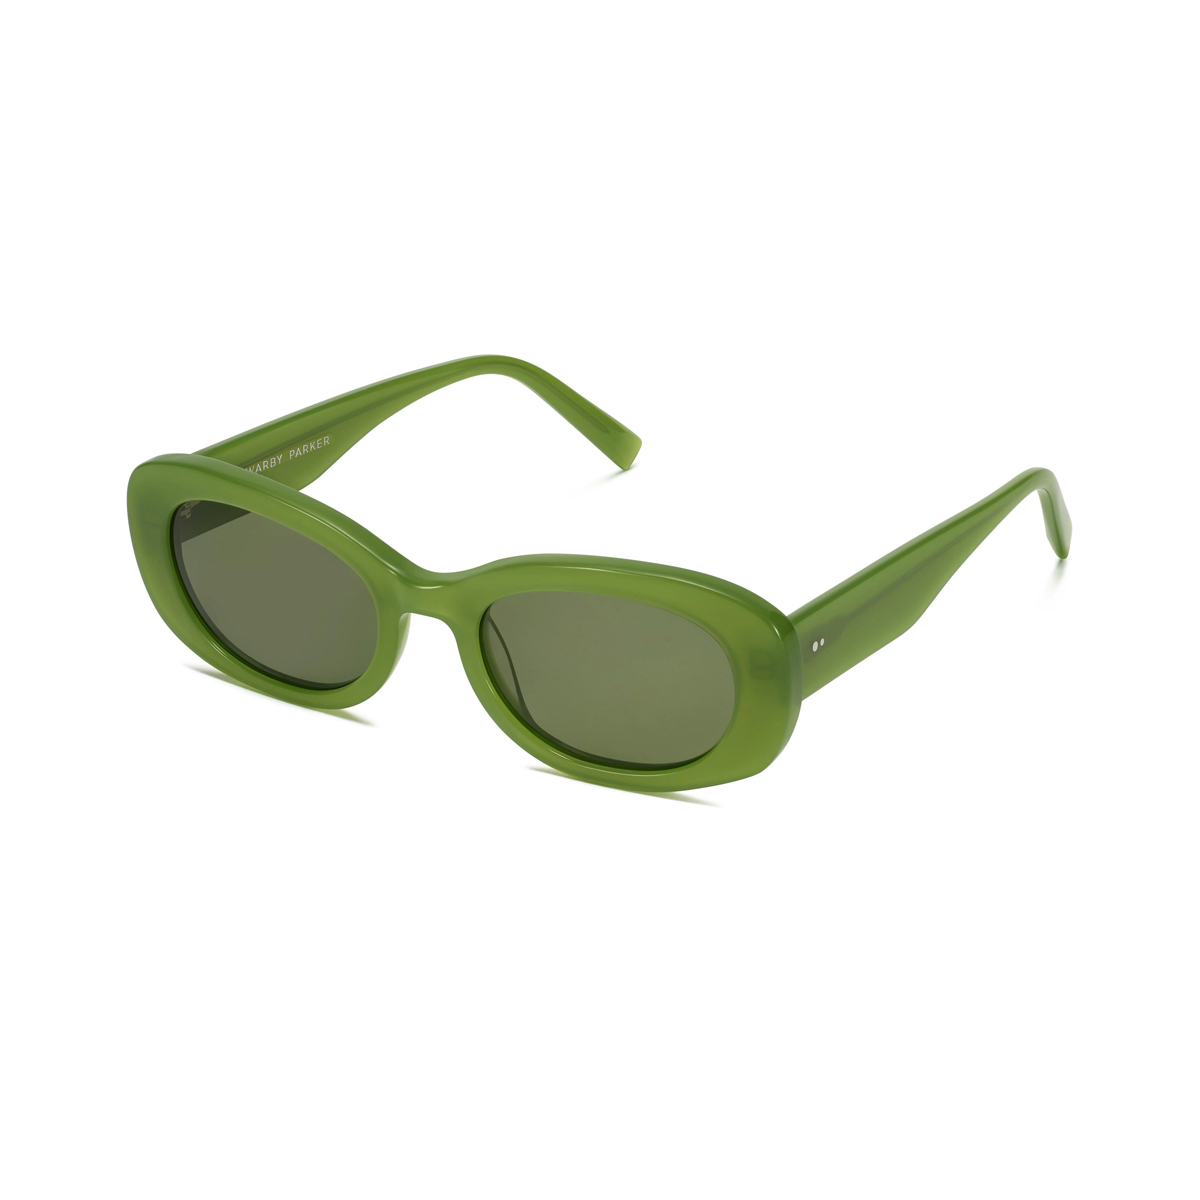 Carmel Sunglasses in Matcha